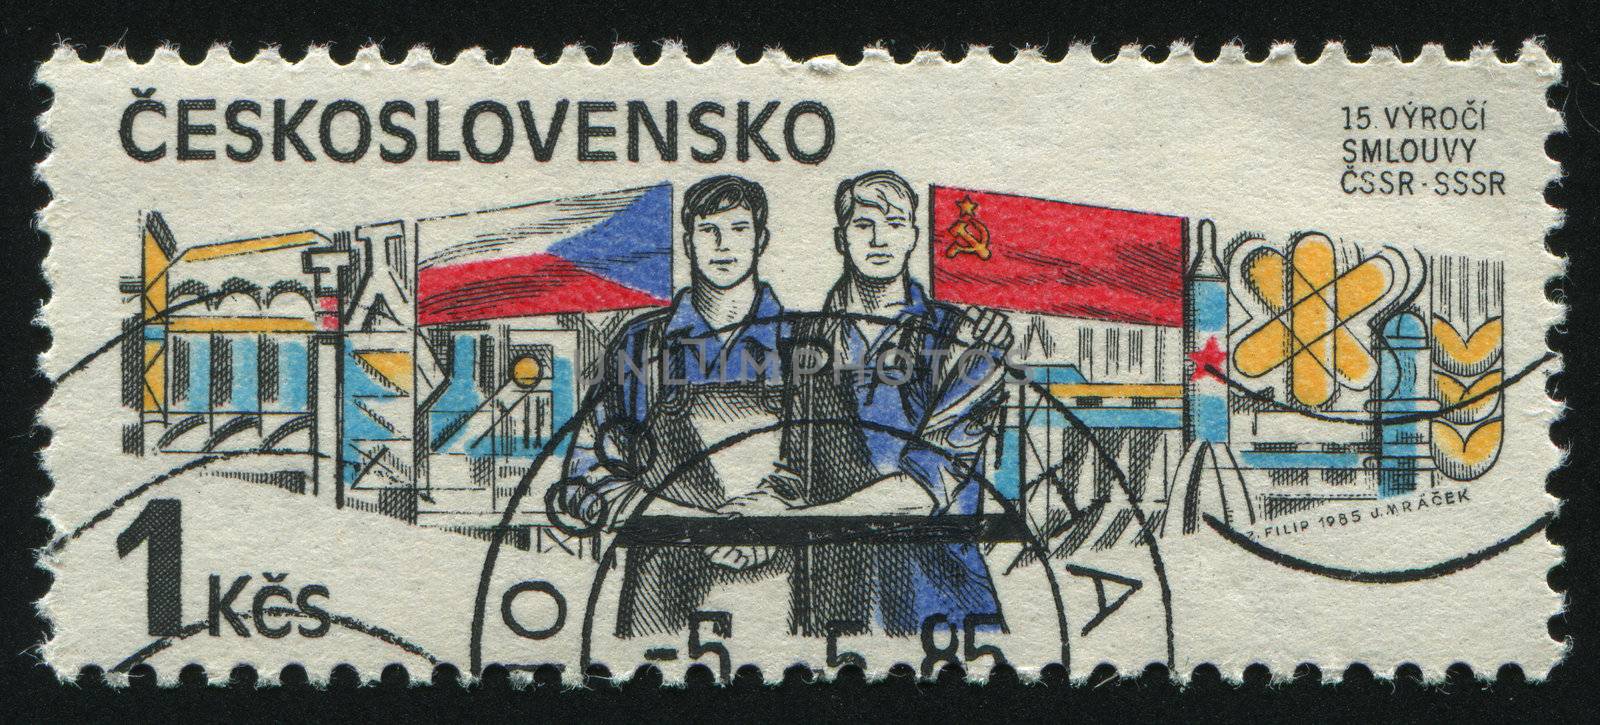 CZECHOSLOVAKIA - CIRCA 1985: Czech-Soviet Treaty, circa 1985.